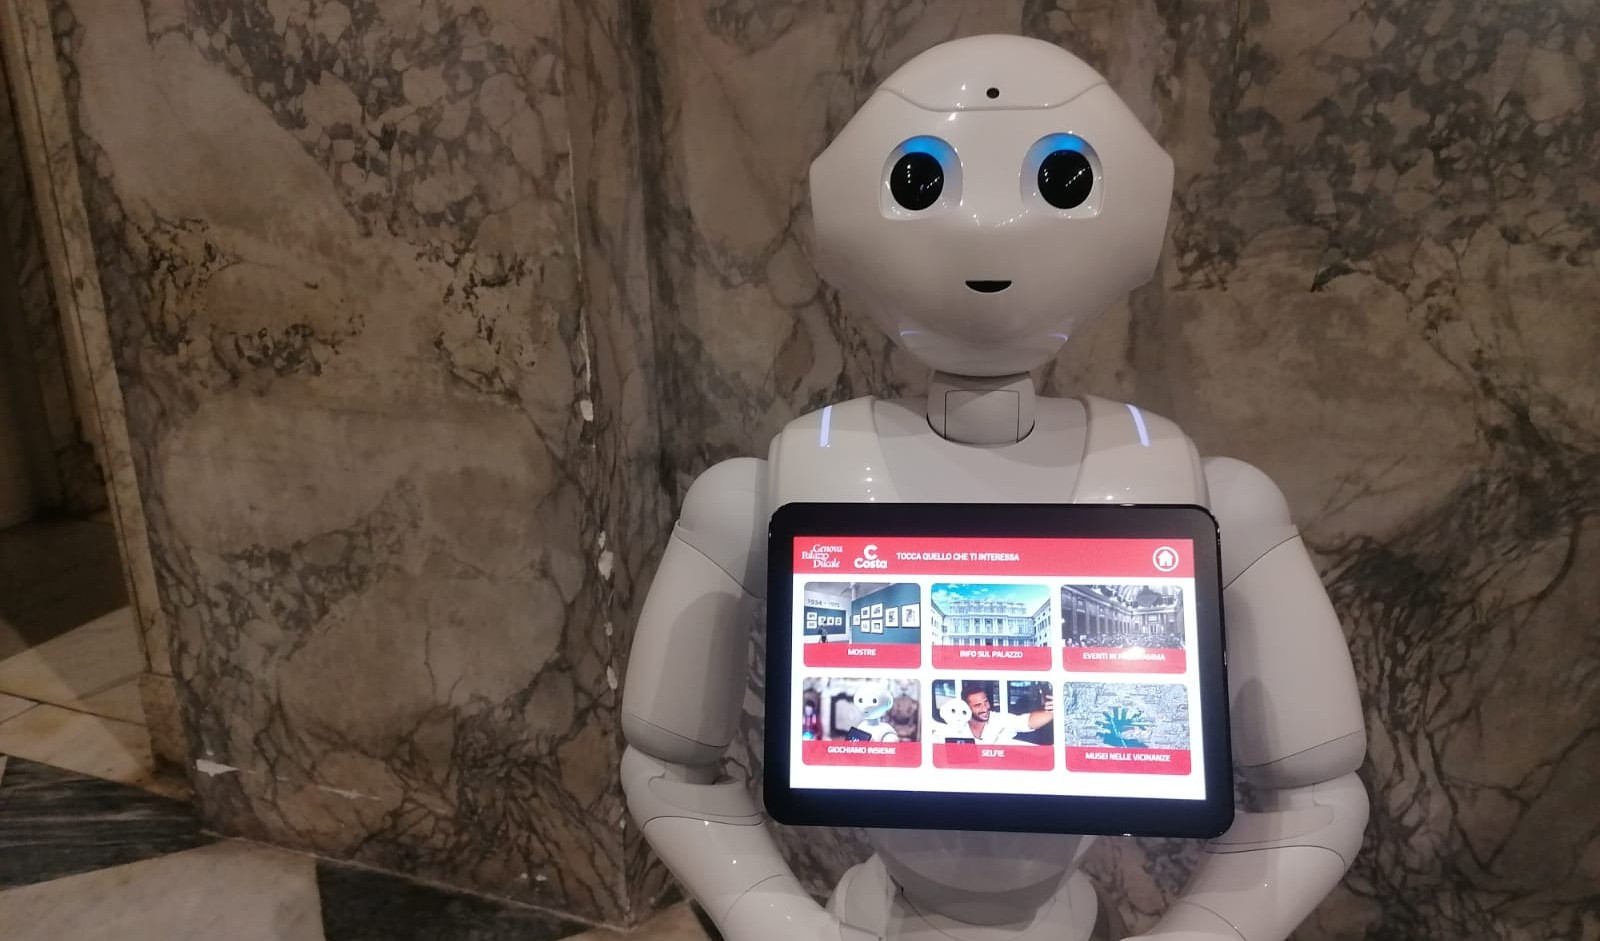 A Palazzo Ducale due robot 'Pepper' per informare e intrattenere i visitatori